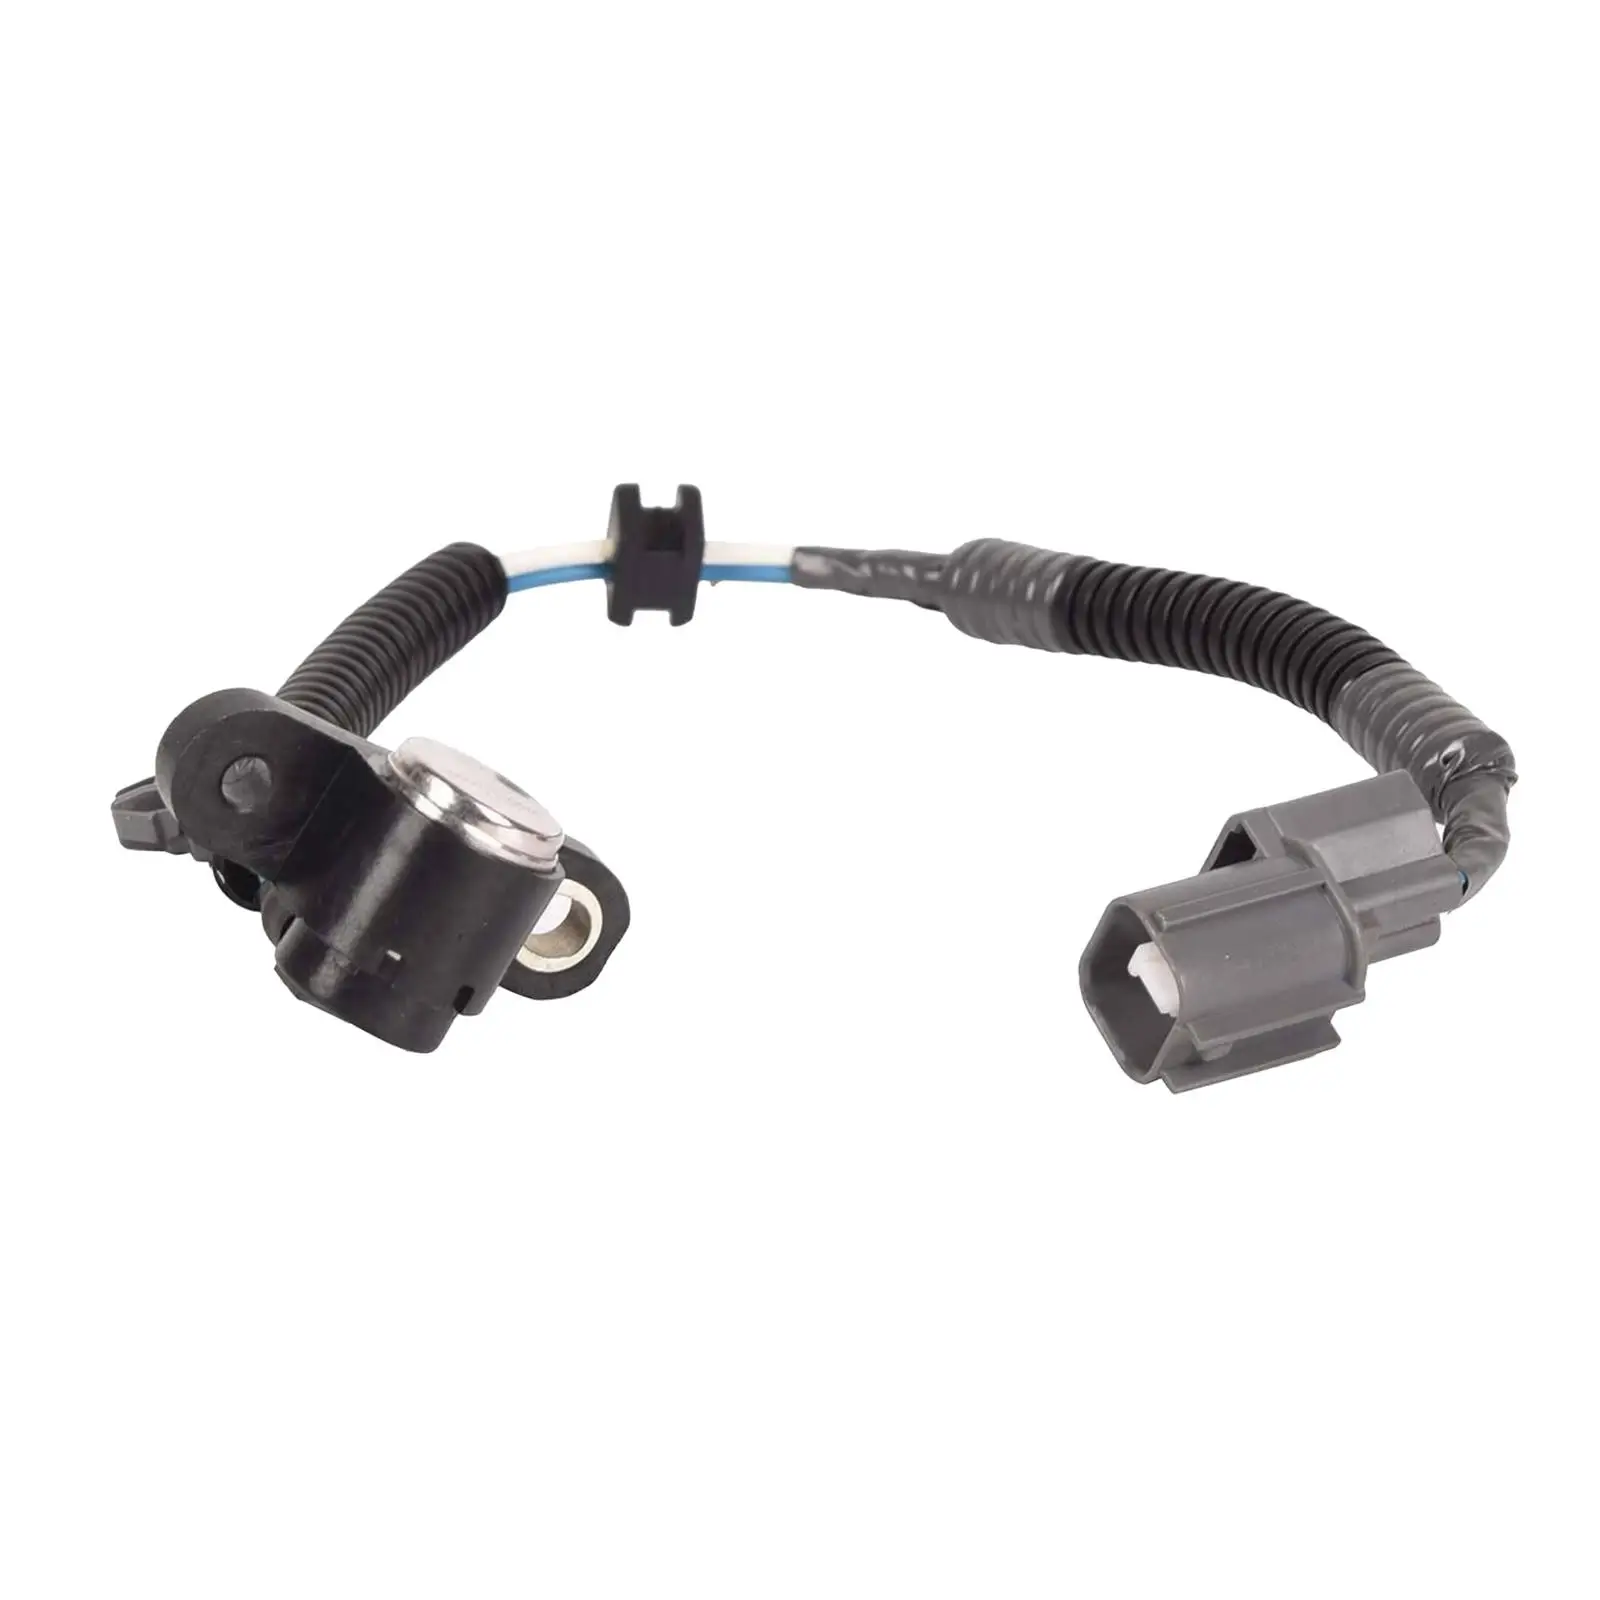 Crankshaft PULSE Position Sensor 37500P72A01 5S1627 Fits for Civic Del Sol Motors Parts